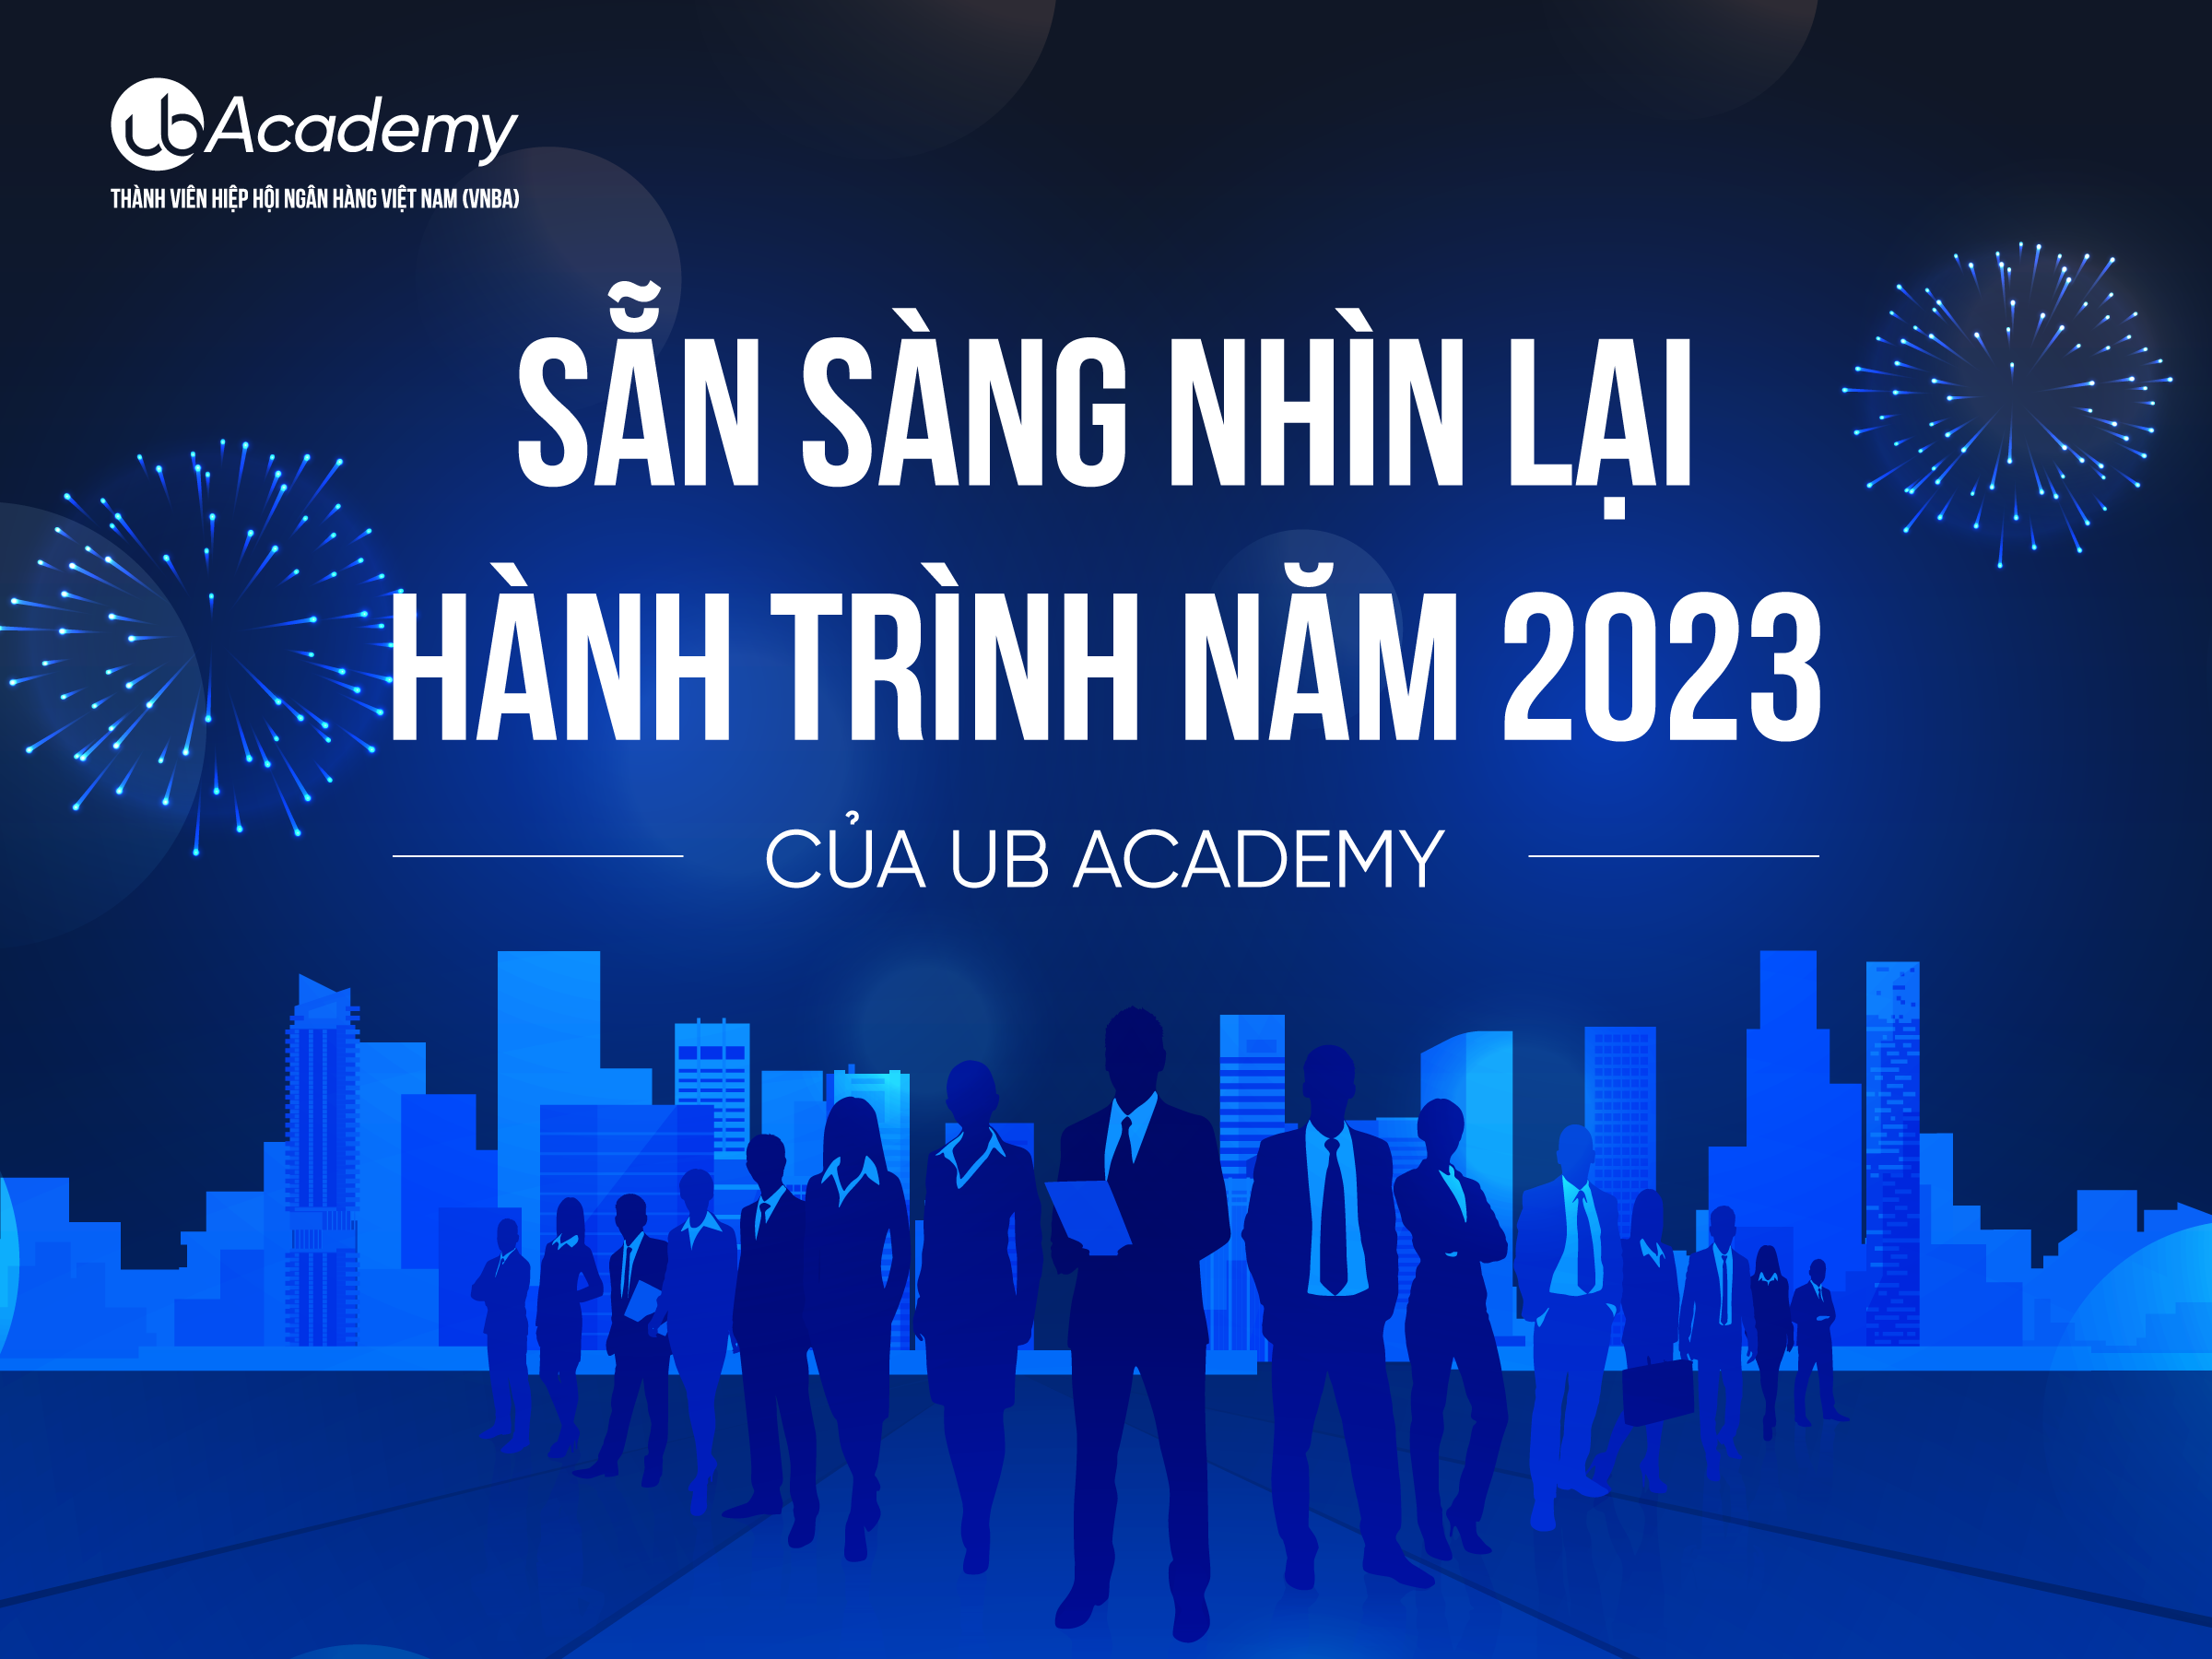 Nhìn lại hành trình năm 2023 của UB Academy